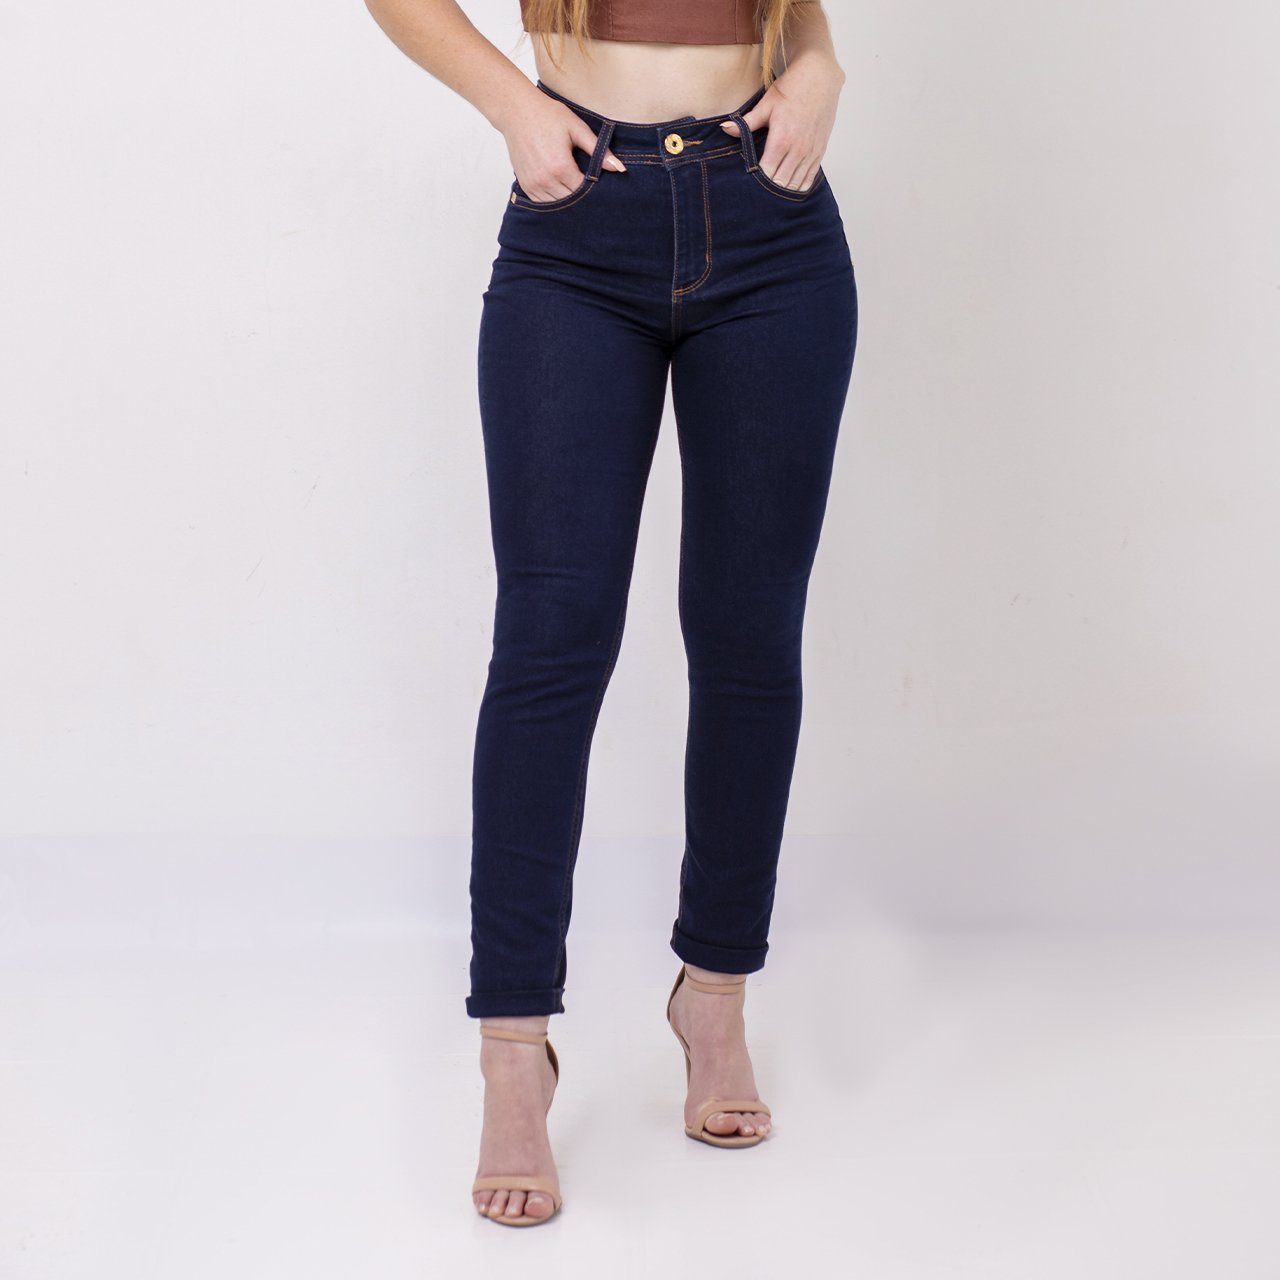 calca-jeans-skinny-voox-89-feminina-escura-vx10262-d